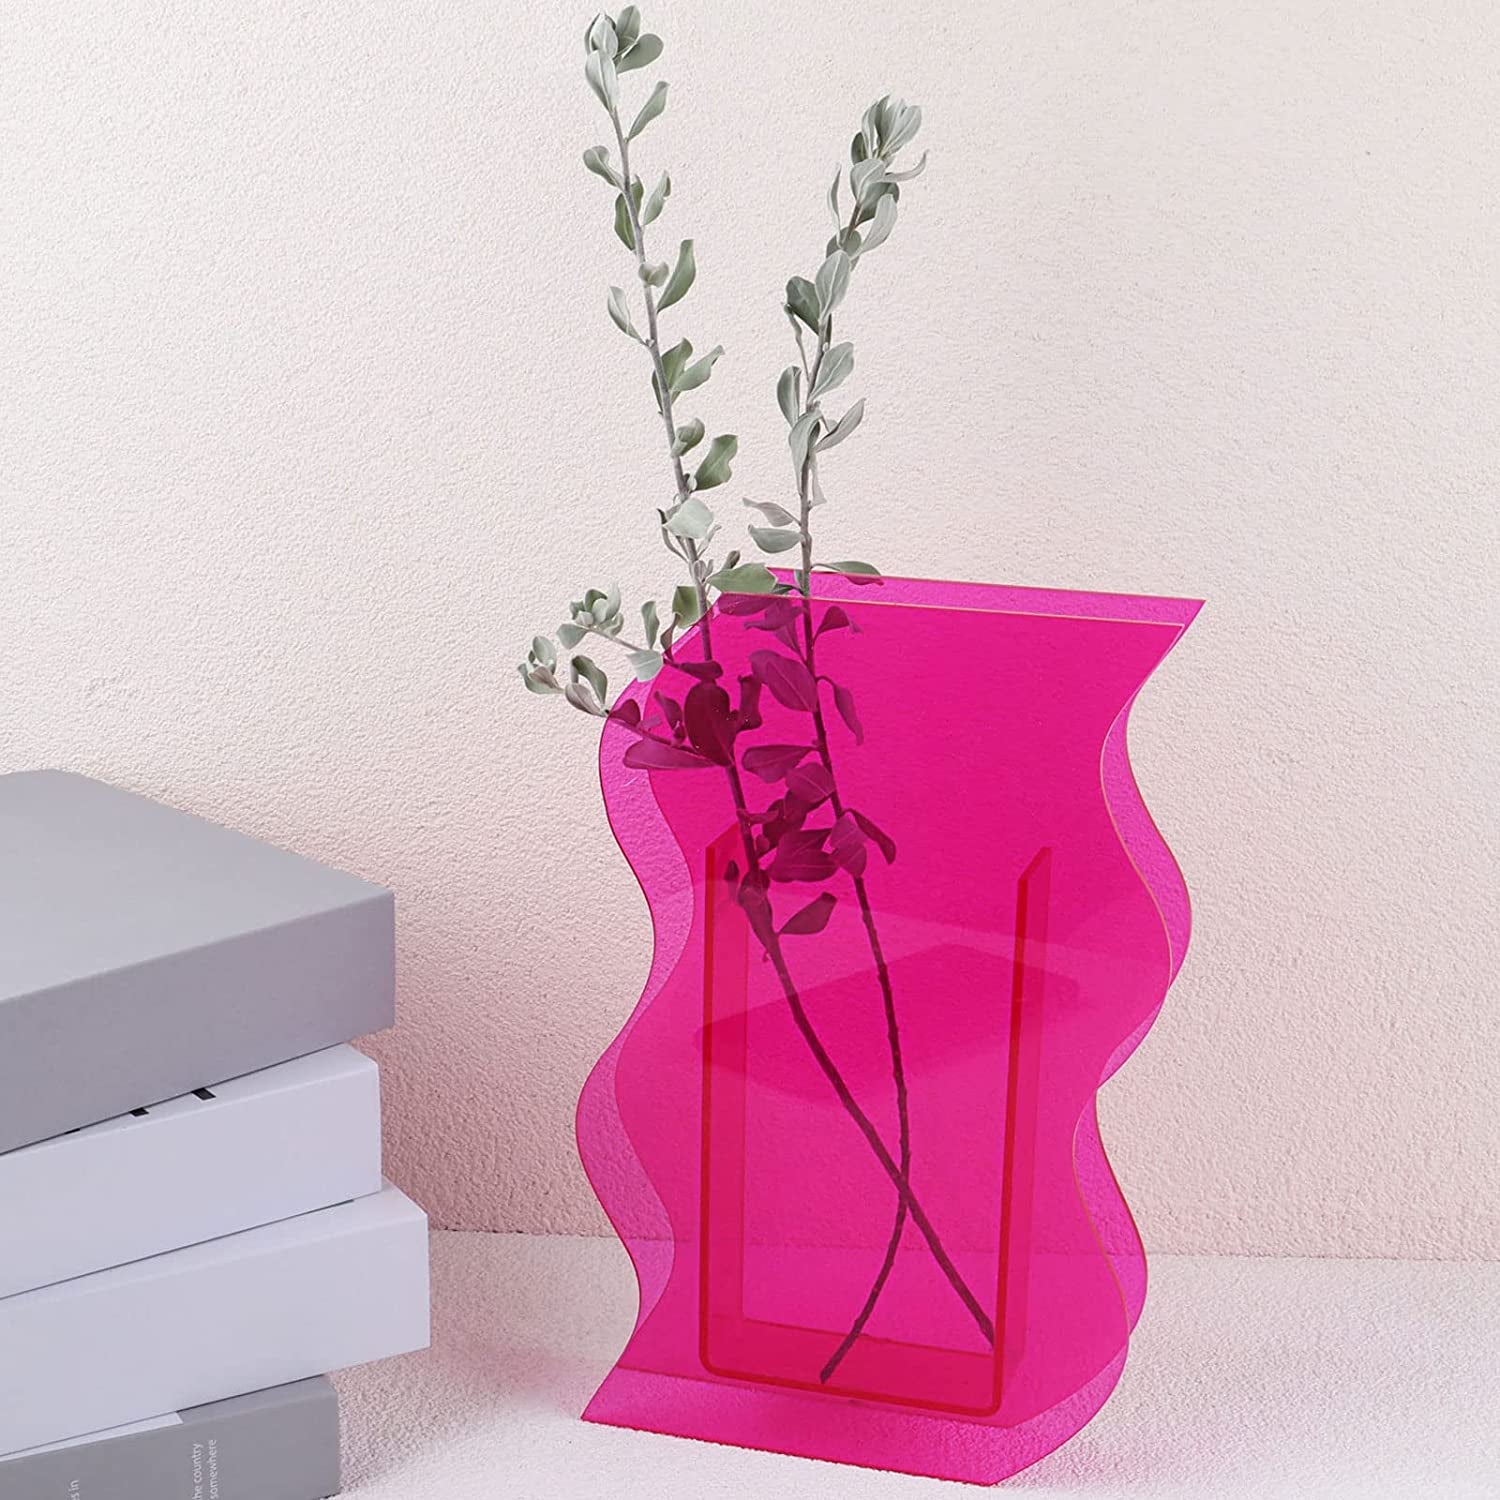 a pink curvy acrylic vase